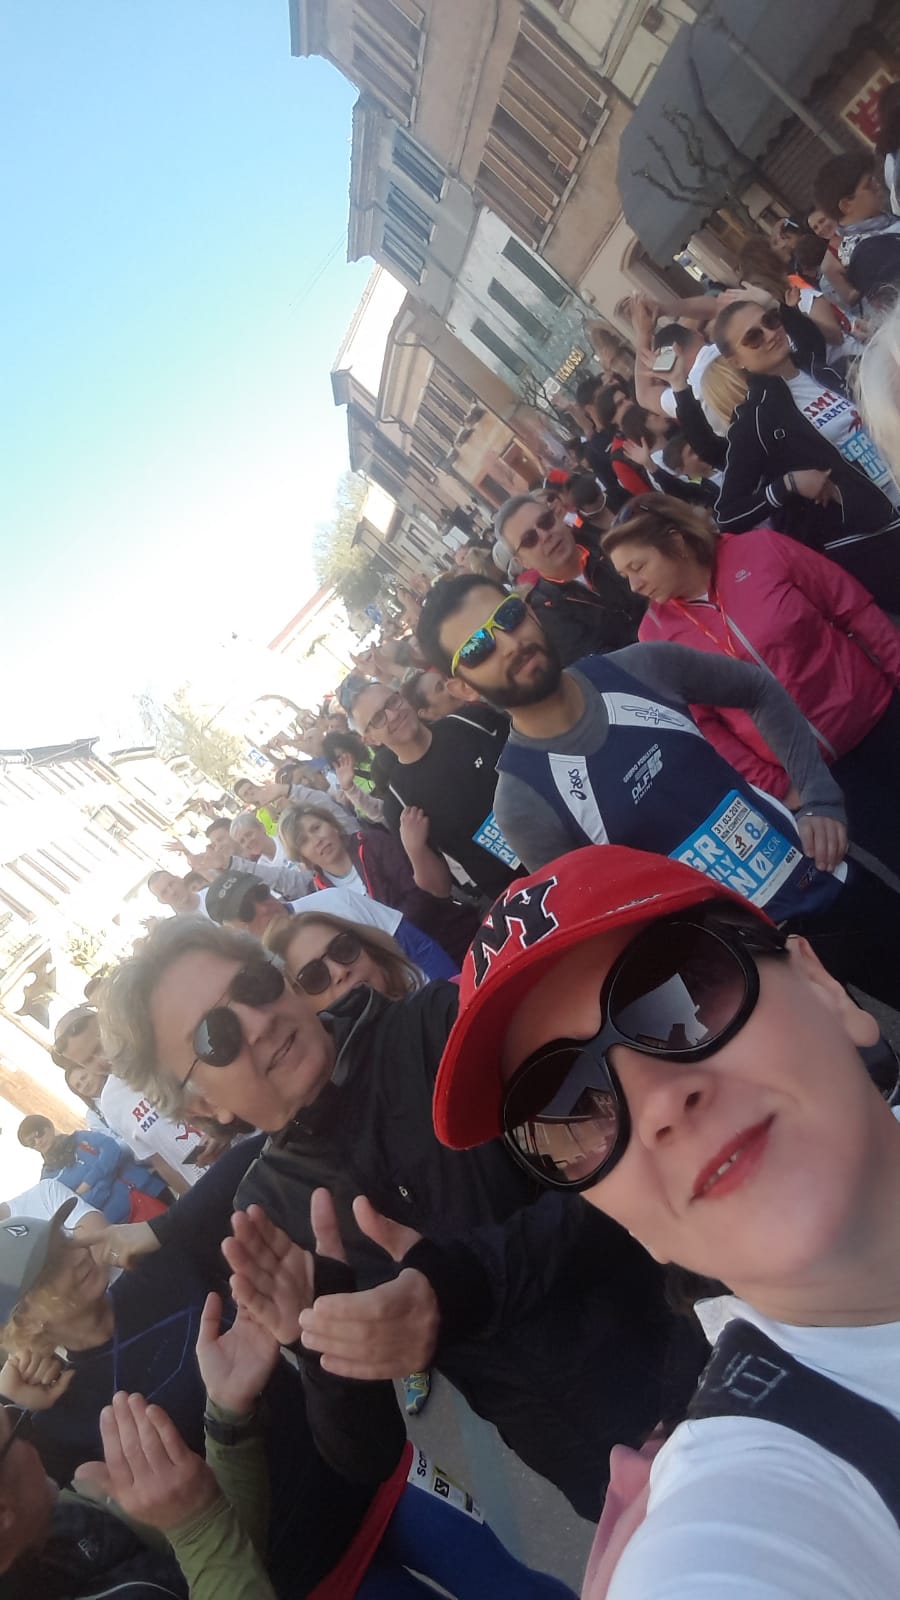 Maratona di Rimini